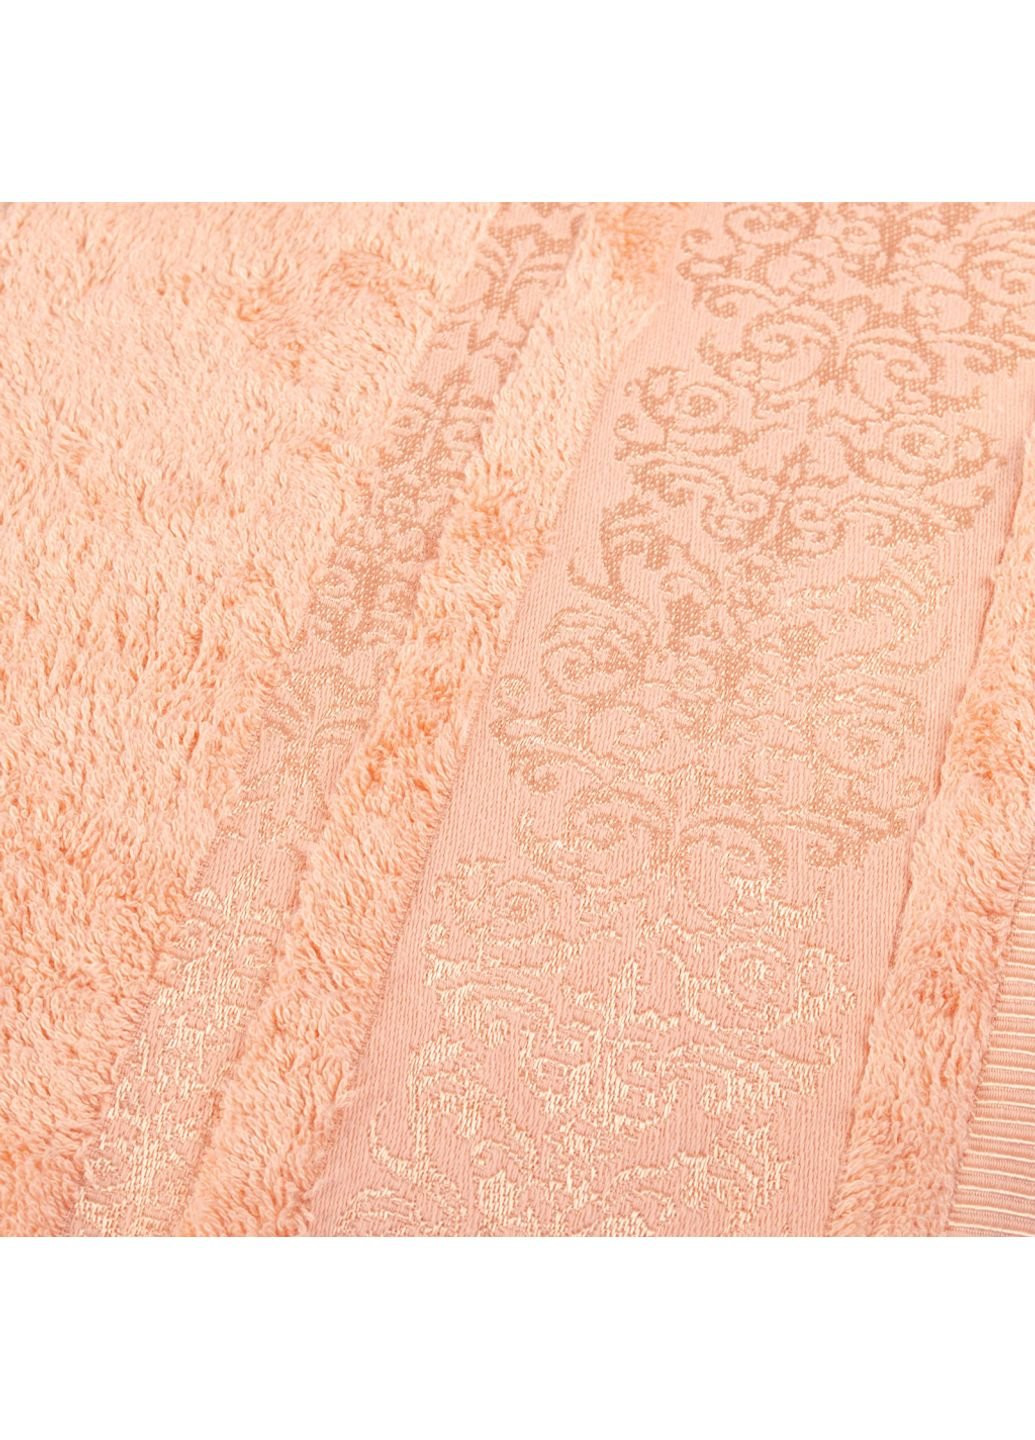 Home Line полотенце махровый bamboo оранжевый 50х90 см (127247) оранжевый производство - Азербайджан